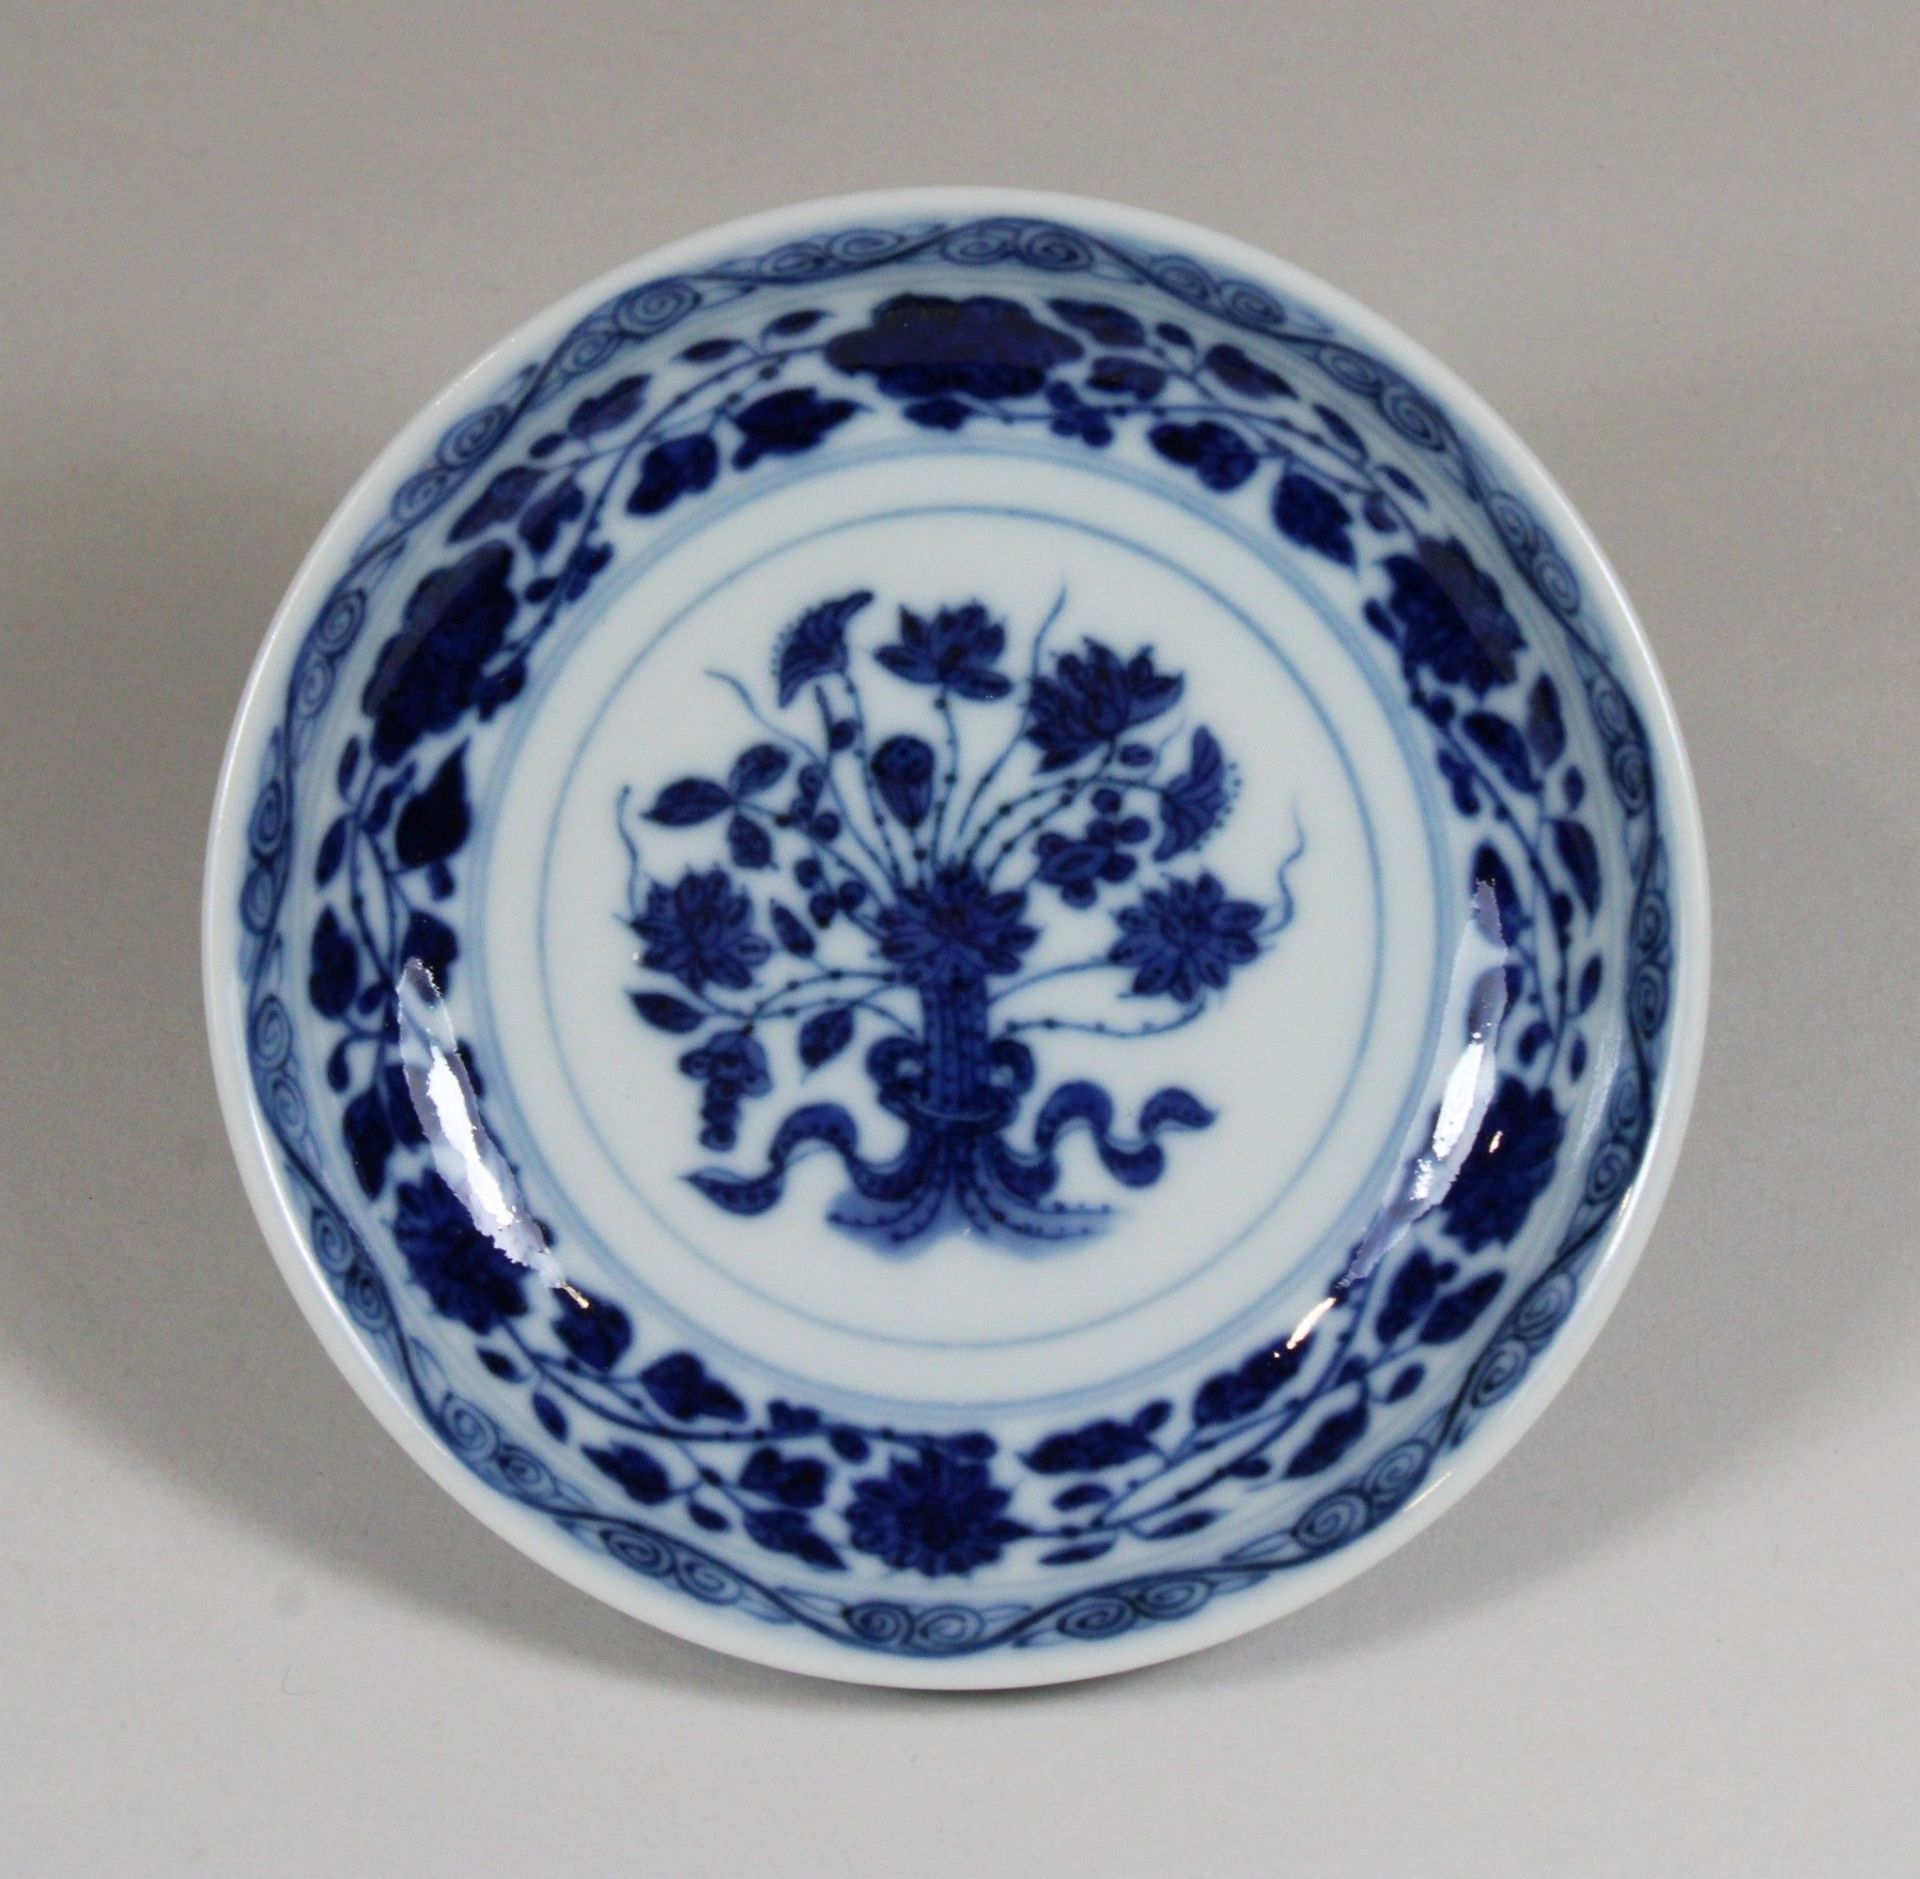 Chinesisches Porzellan, Qianlong Zeit, kl. Teller, blau floral bemalt, unter Glasur, im Boden